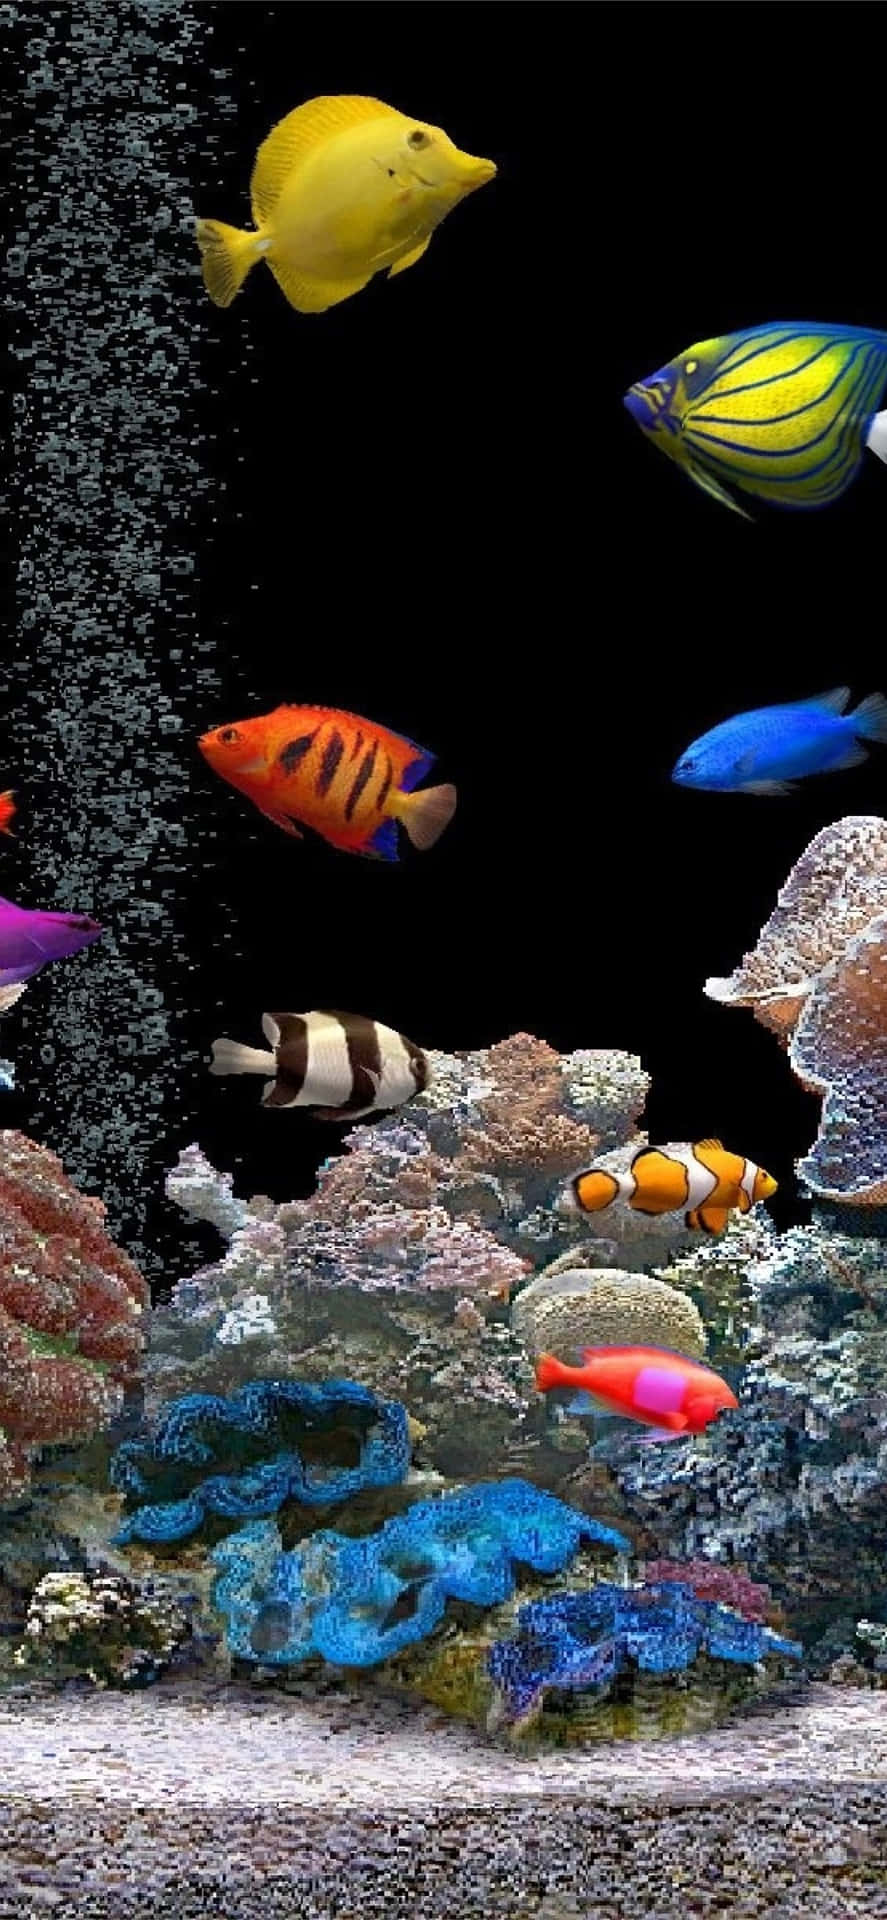 Oplev en undervandsflugt med en akvarie-tema iPhone tapet. Wallpaper